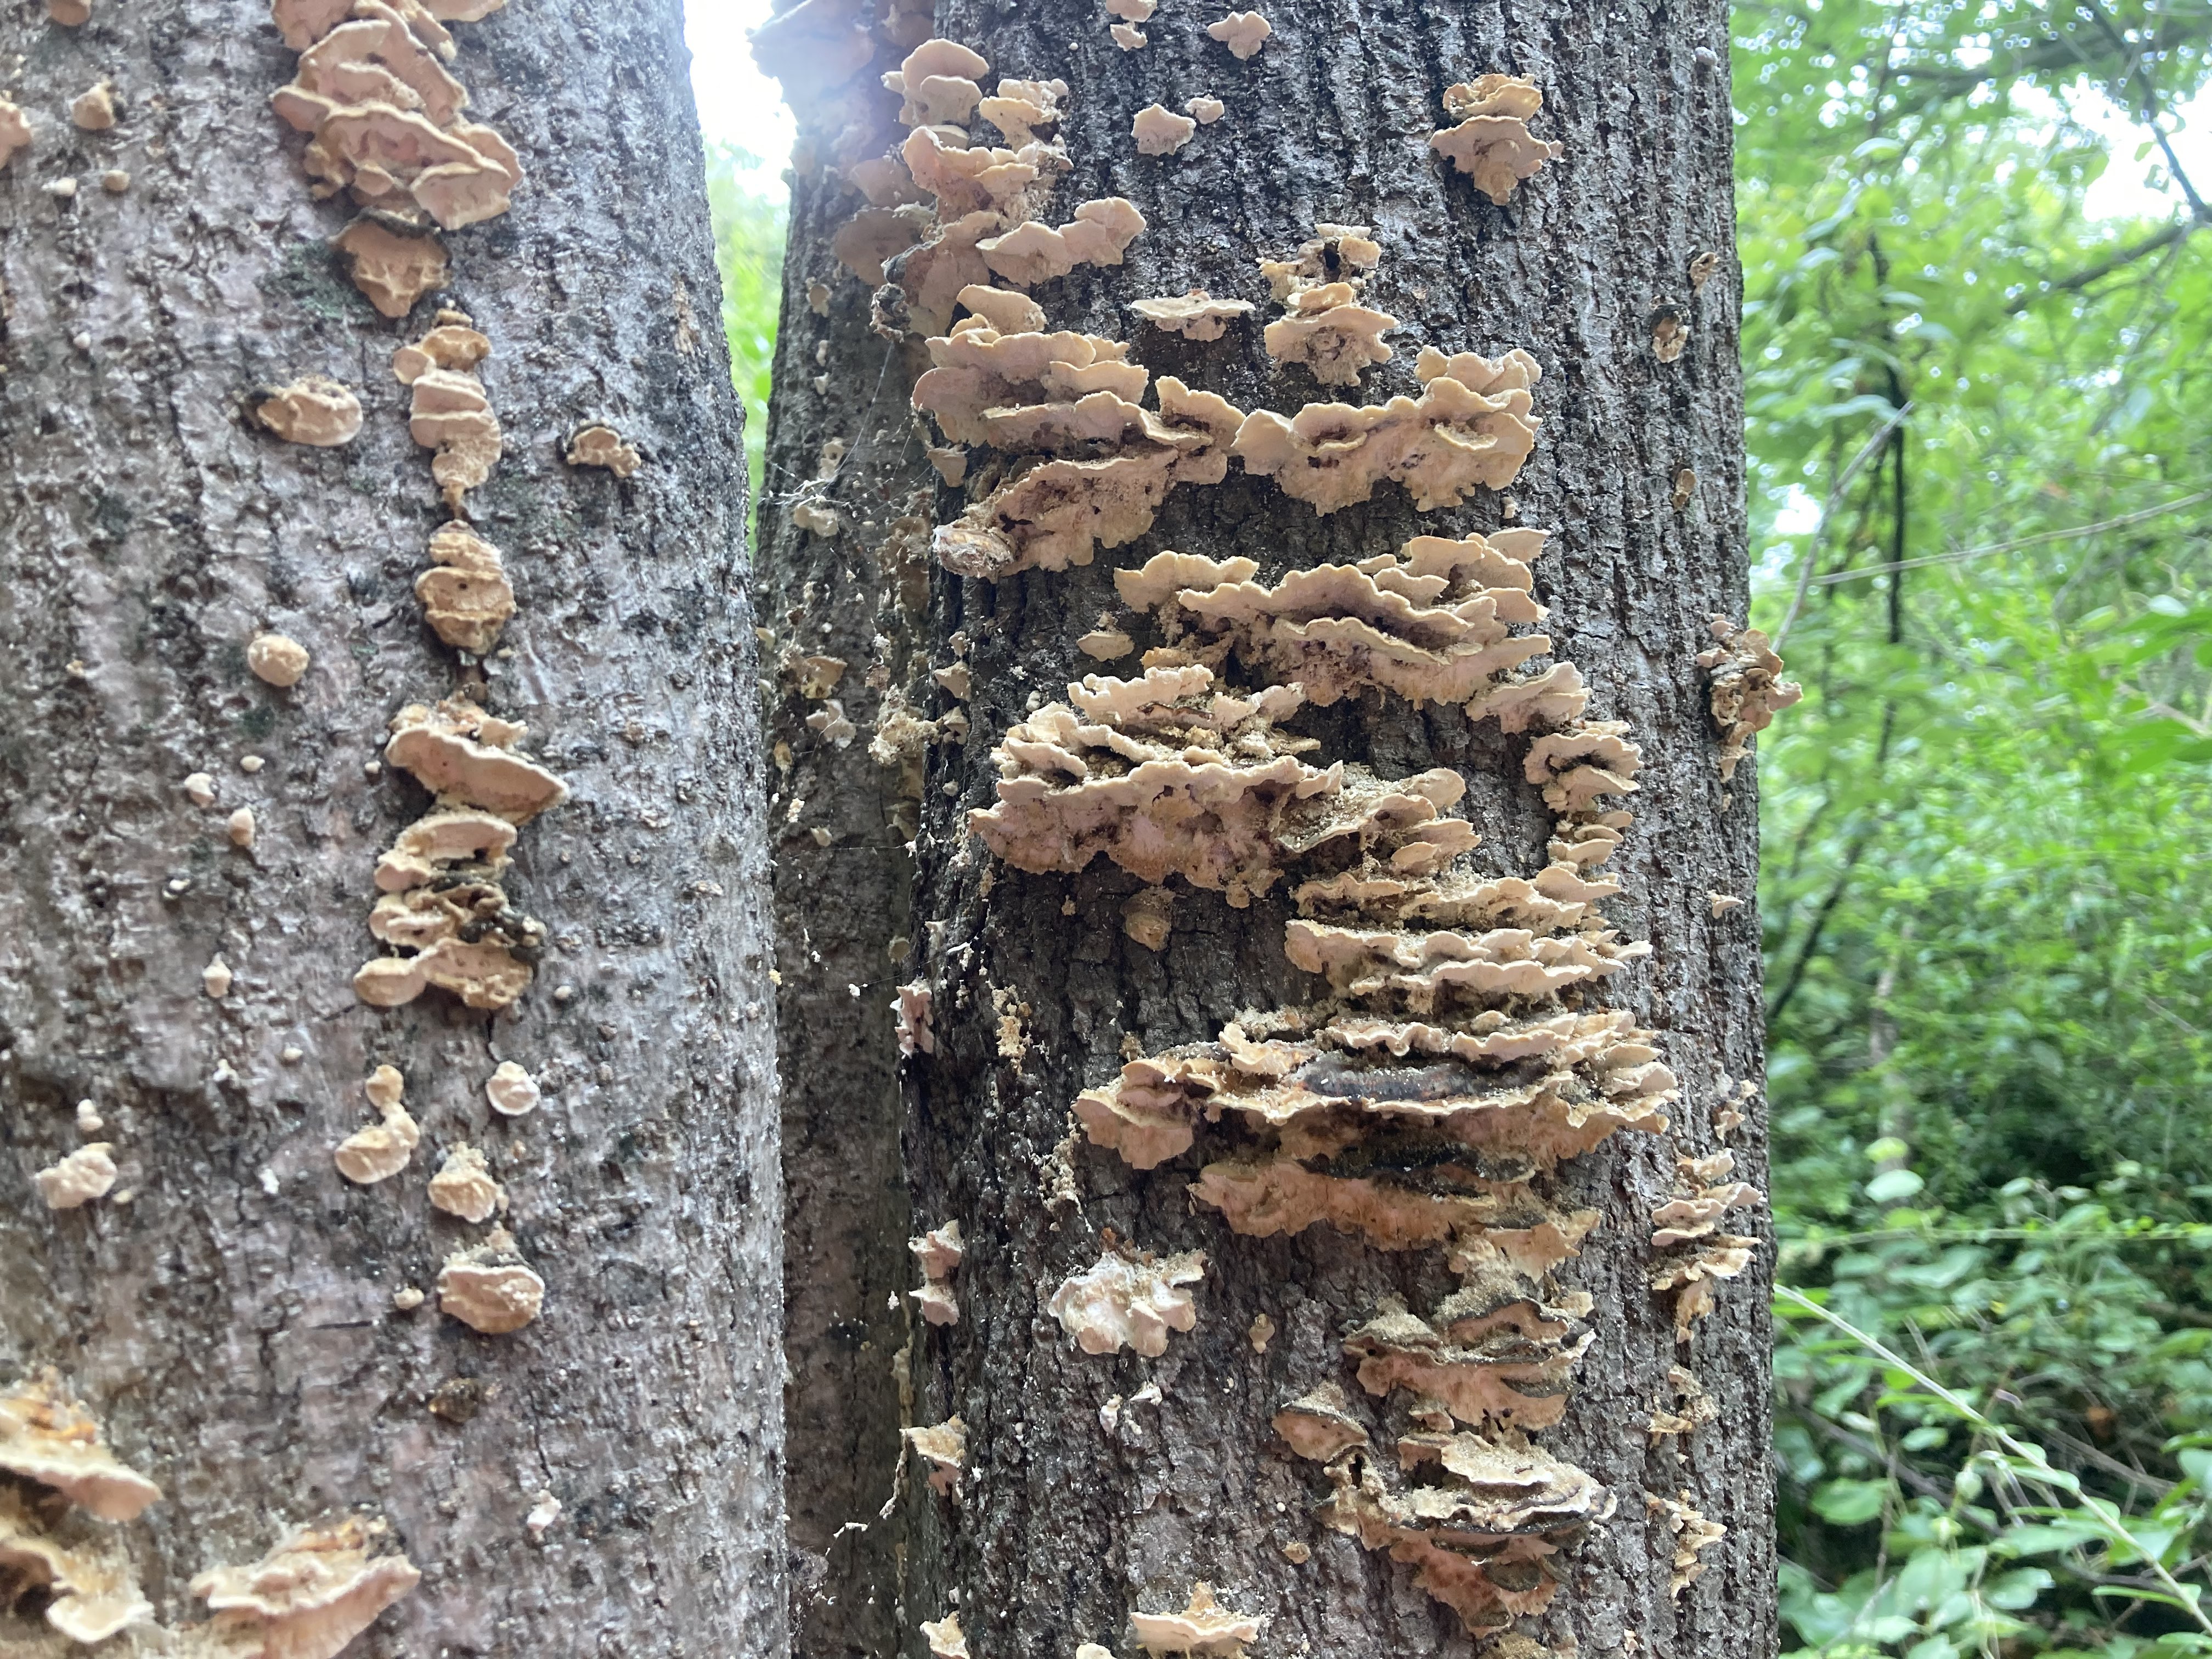 brown mushrooms growing on a tree